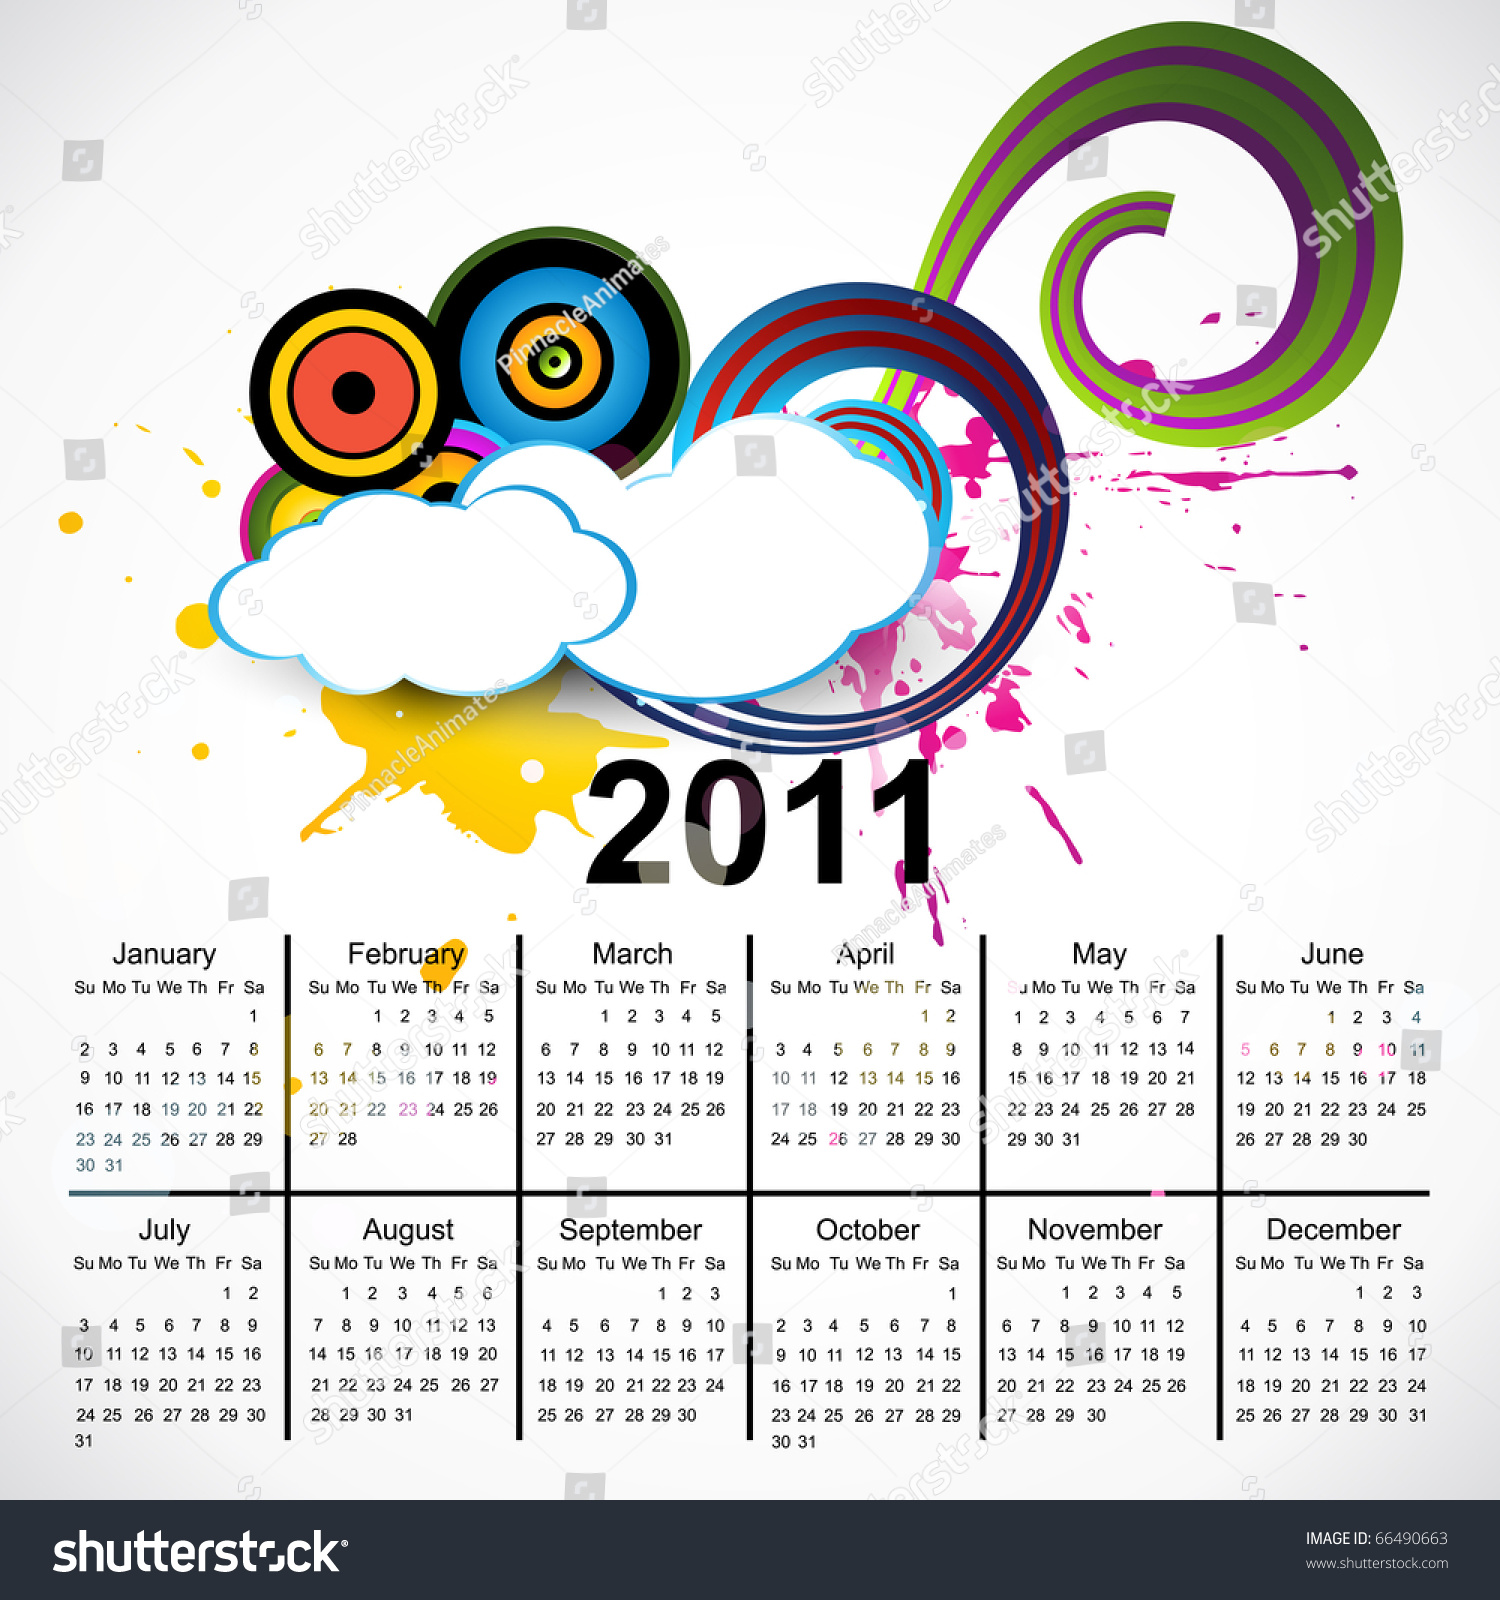 New Year Vector Calendar Design 66490663 Shutterstock